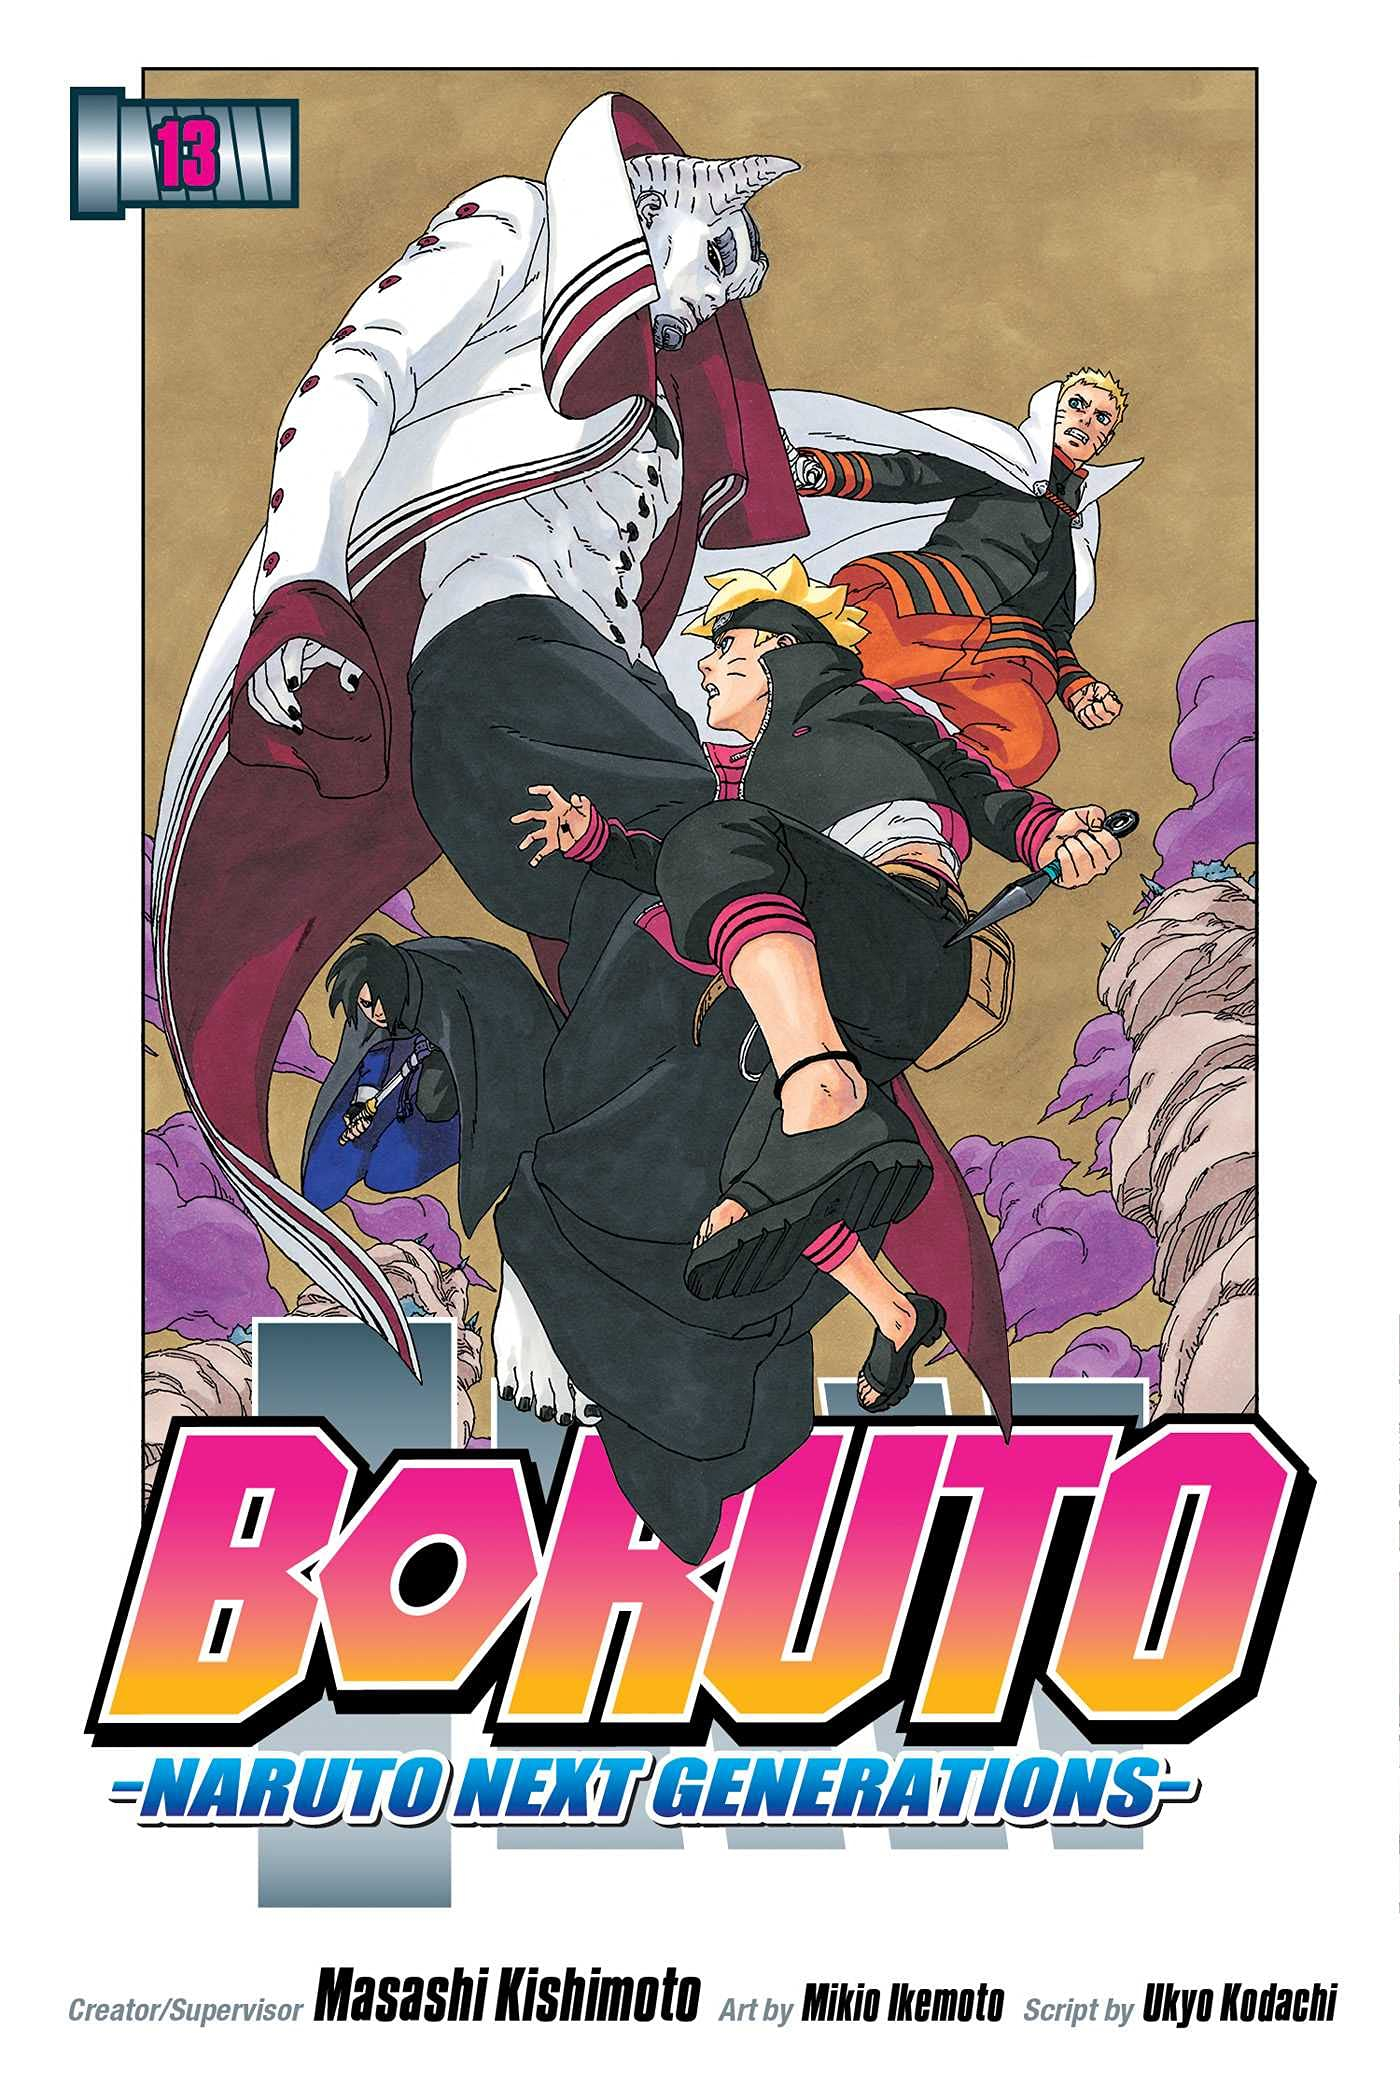 Haise 🍥 on X: Venho anunciar que o Boruto Manga Only acabou de lançar!!!  O projeto edita o anime de Boruto o deixando mais semelhante ao mangá,  cortando todos os conteúdos originais.